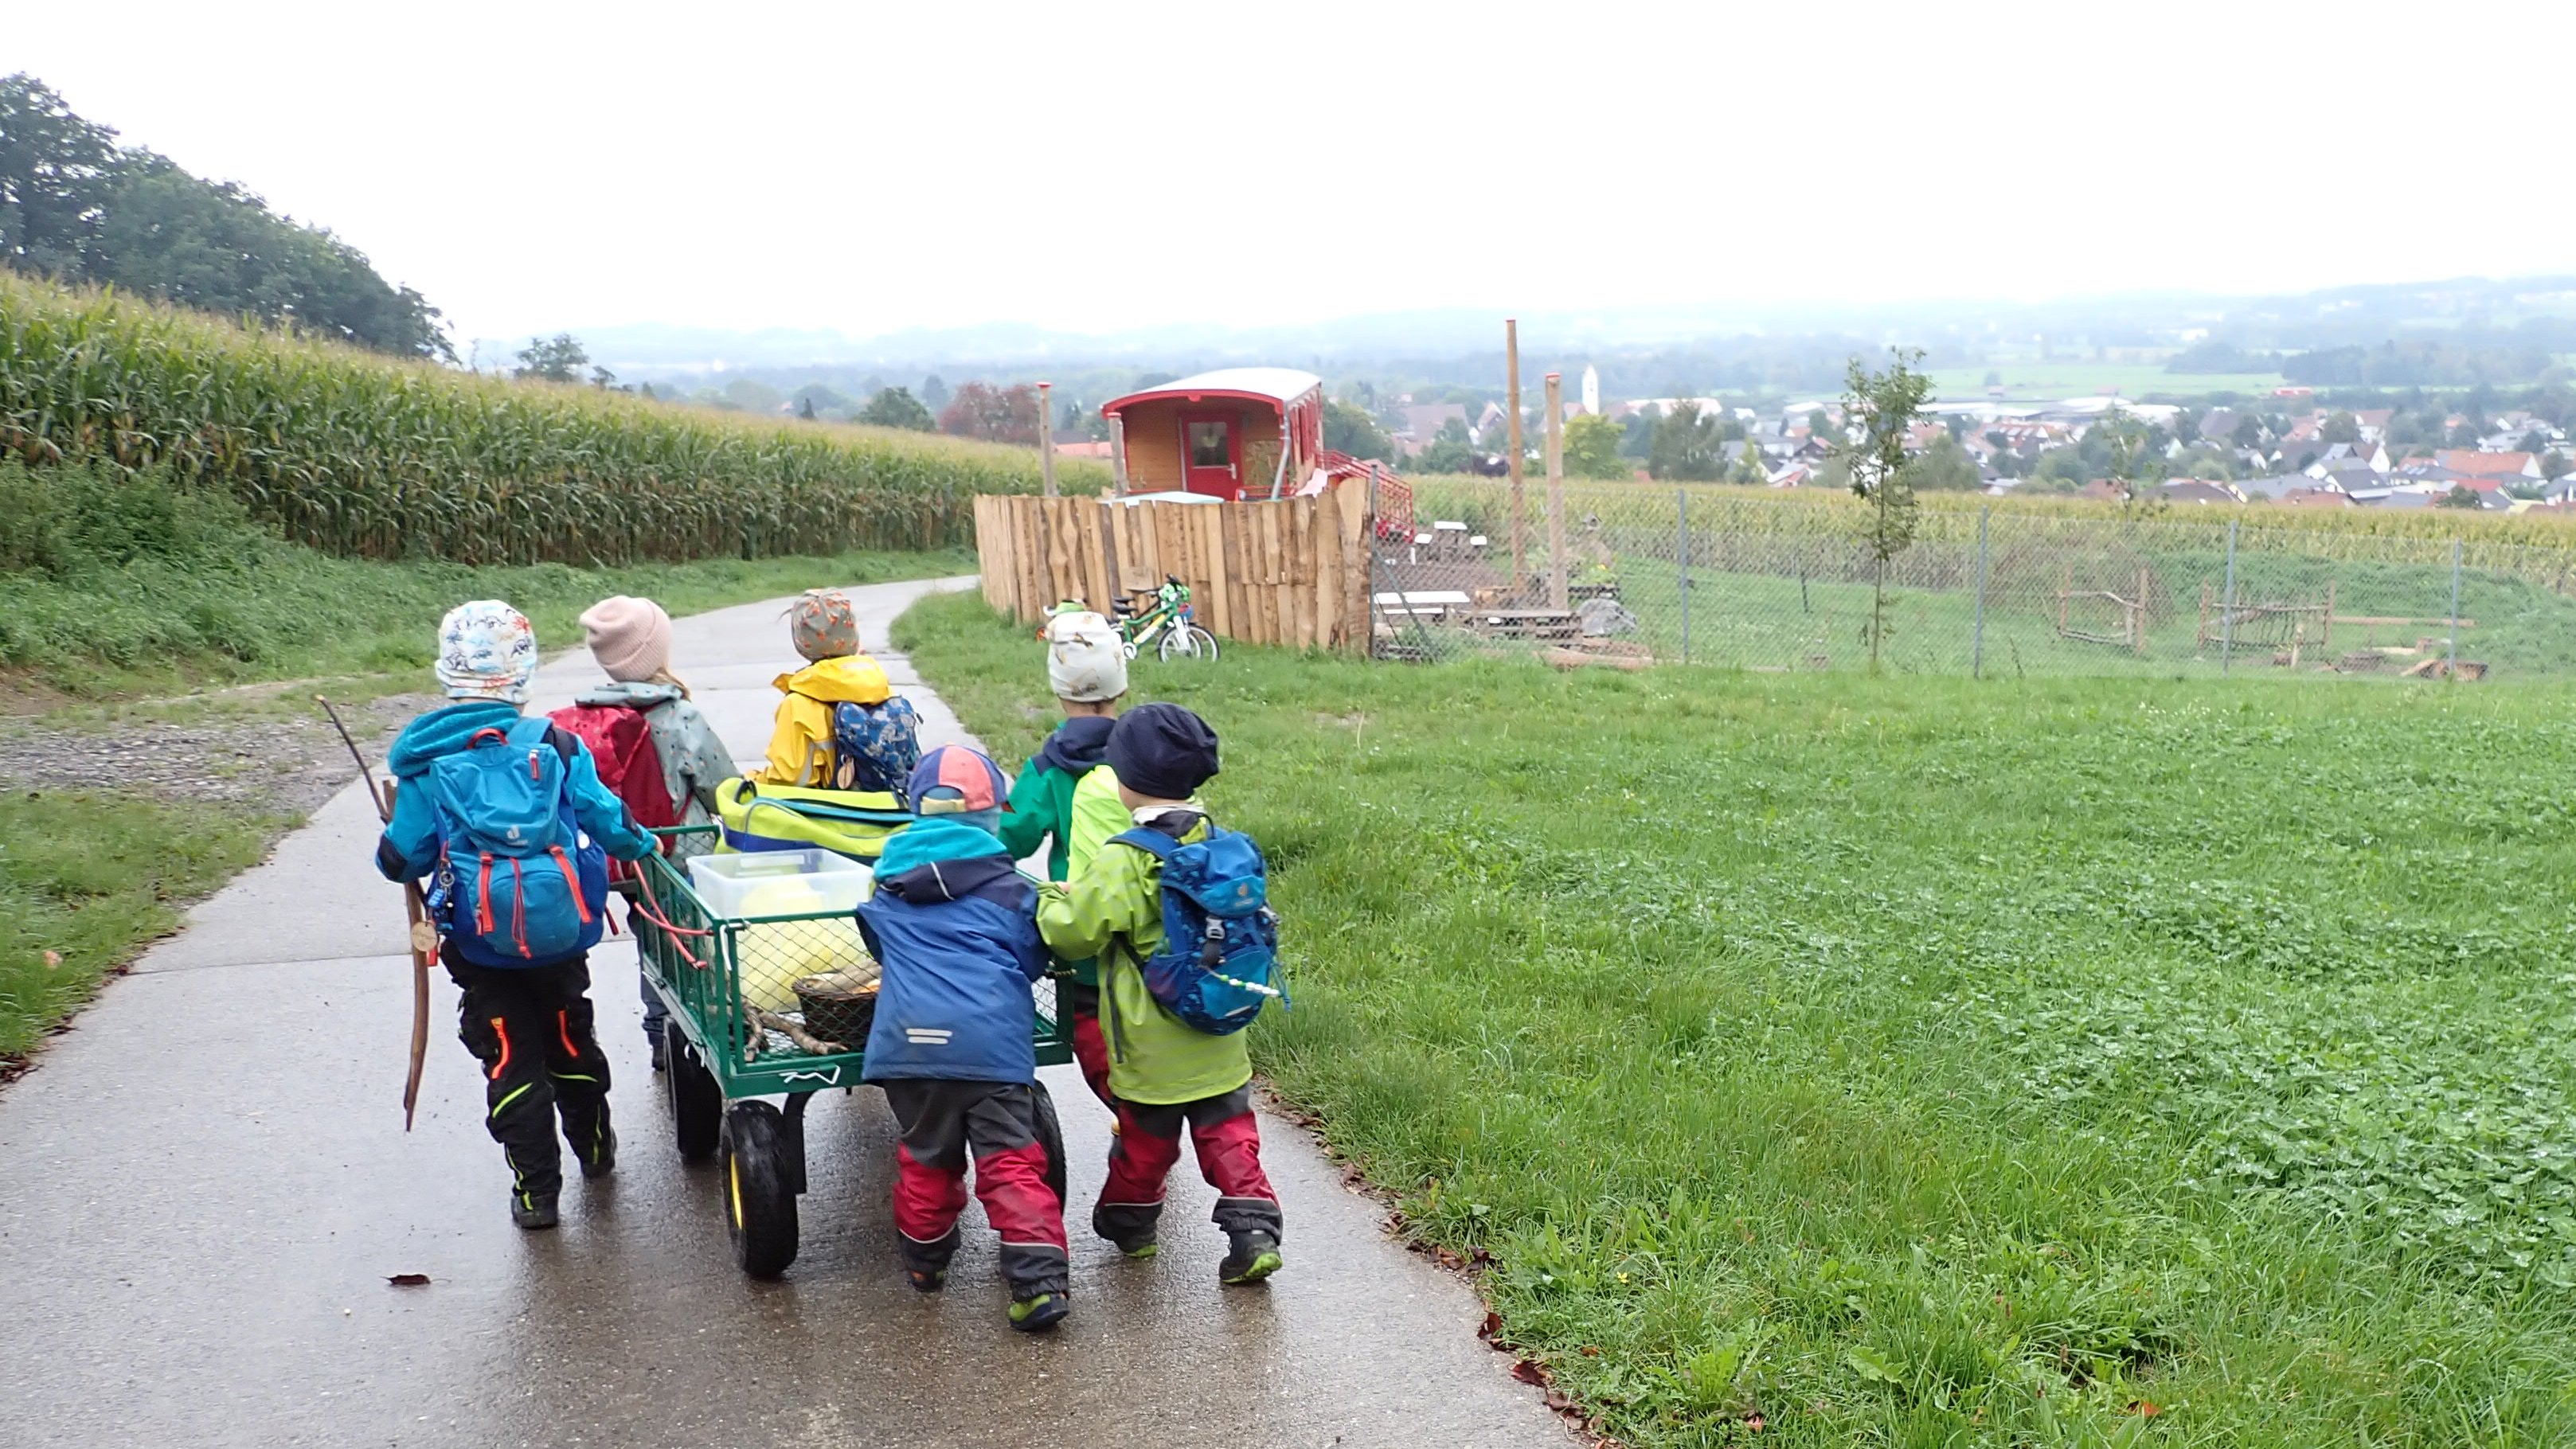 Kinder in bunter Regenbekleidung sind gemeinsam mit einem Bollerwagen im Regen unterwegs